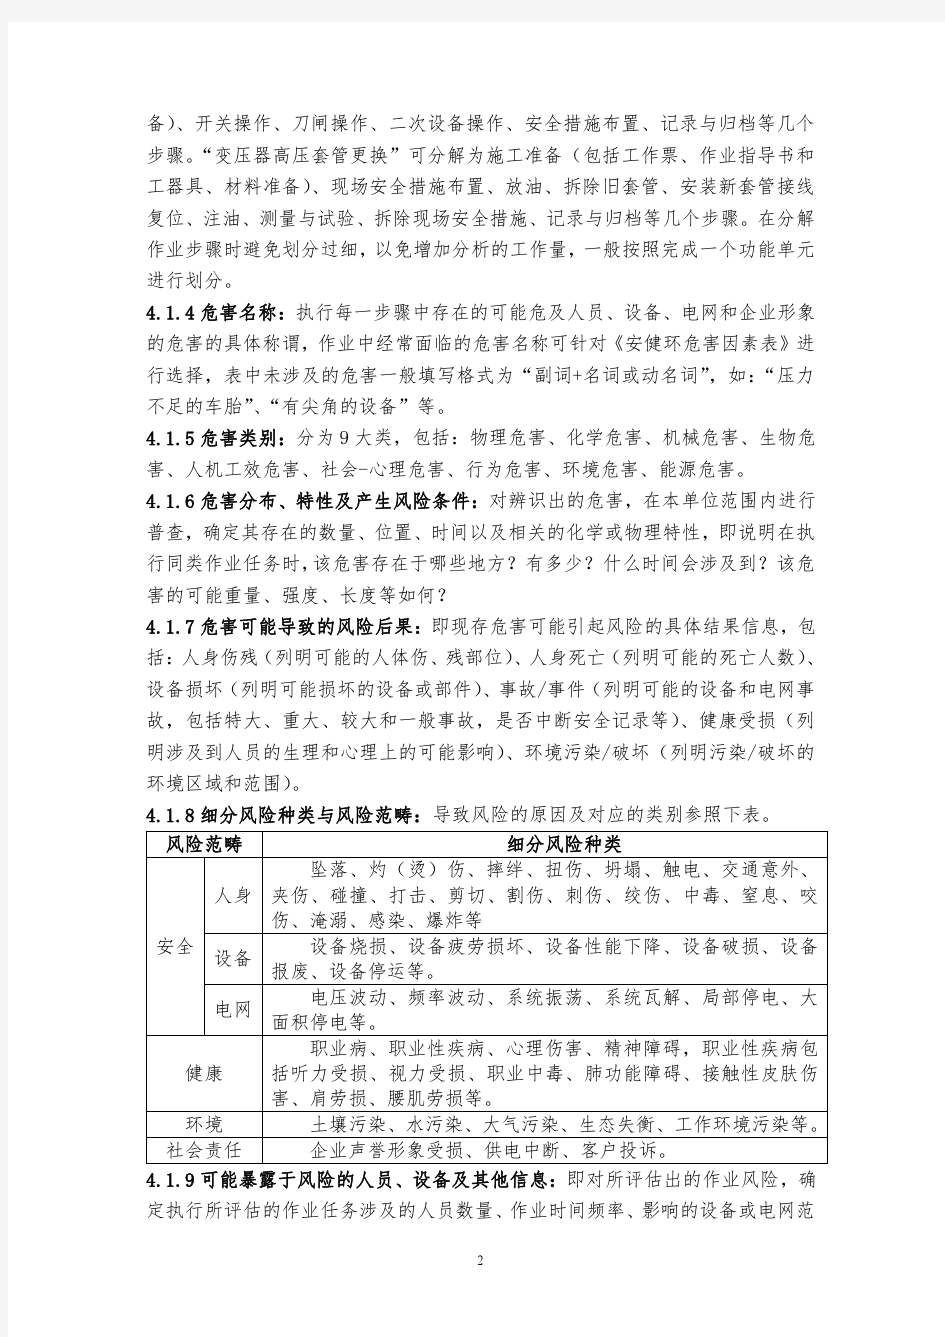 《中国南方电网公司作业危害辨识与风险评估技术标准》